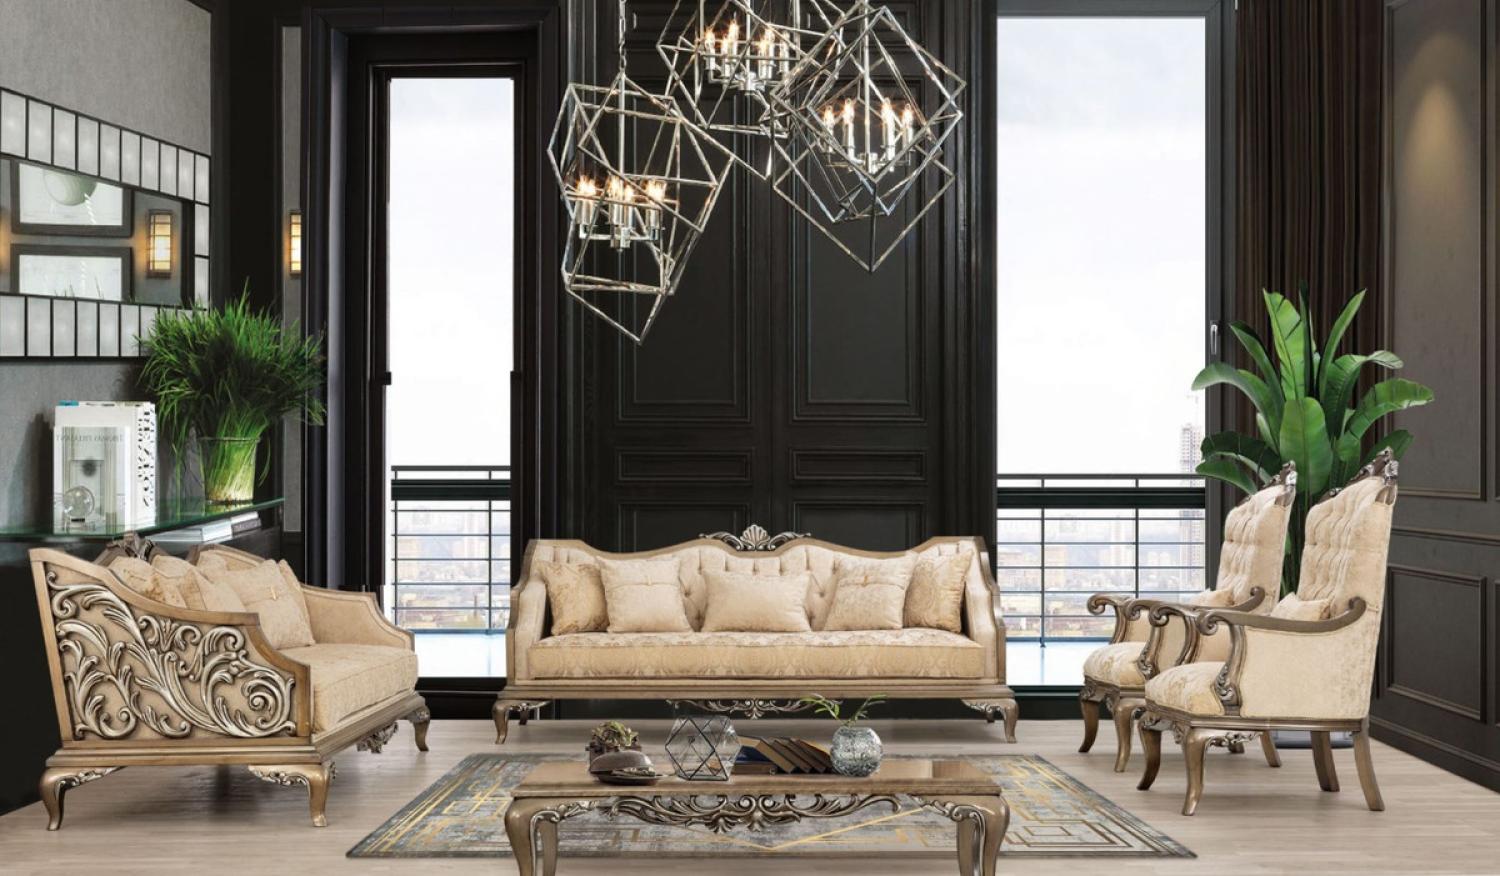 Casa Padrino Luxus Barock Wohnzimmer Set Beige / Gold / Braun / Silber - 2 Sofas & 2 Sessel & 1 Couchtisch - Handgefertigte Barock Wohnzimmer Möbel - Edel & Prunkvoll Bild 1